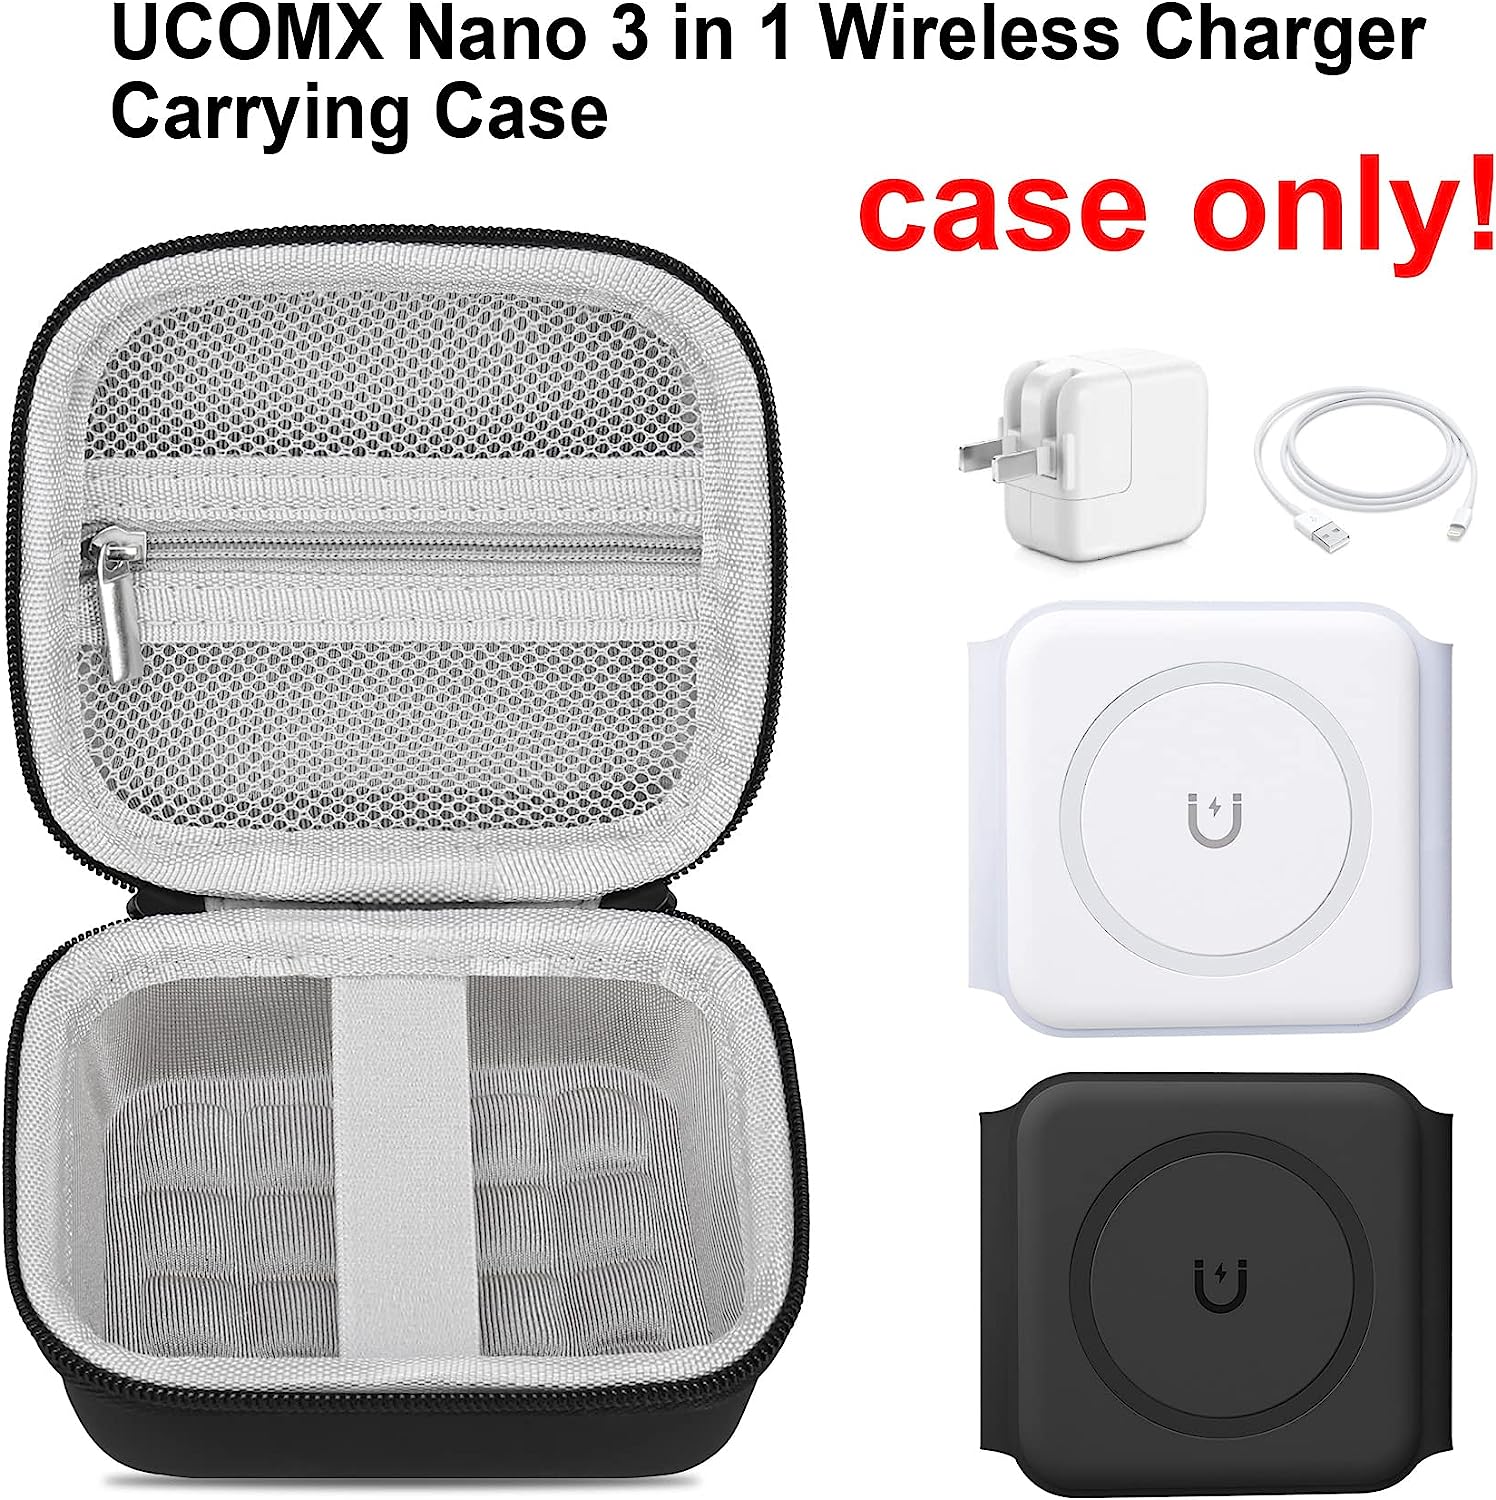 Elonbo Étui de transport pour chargeur sans fil UCOMX Nano 3 en 1, station de charge magnétique pliable 3 en 1, sac de rangement pour chargeur sans fil rapide, poche en filet pour câble adaptateur, noir + gris